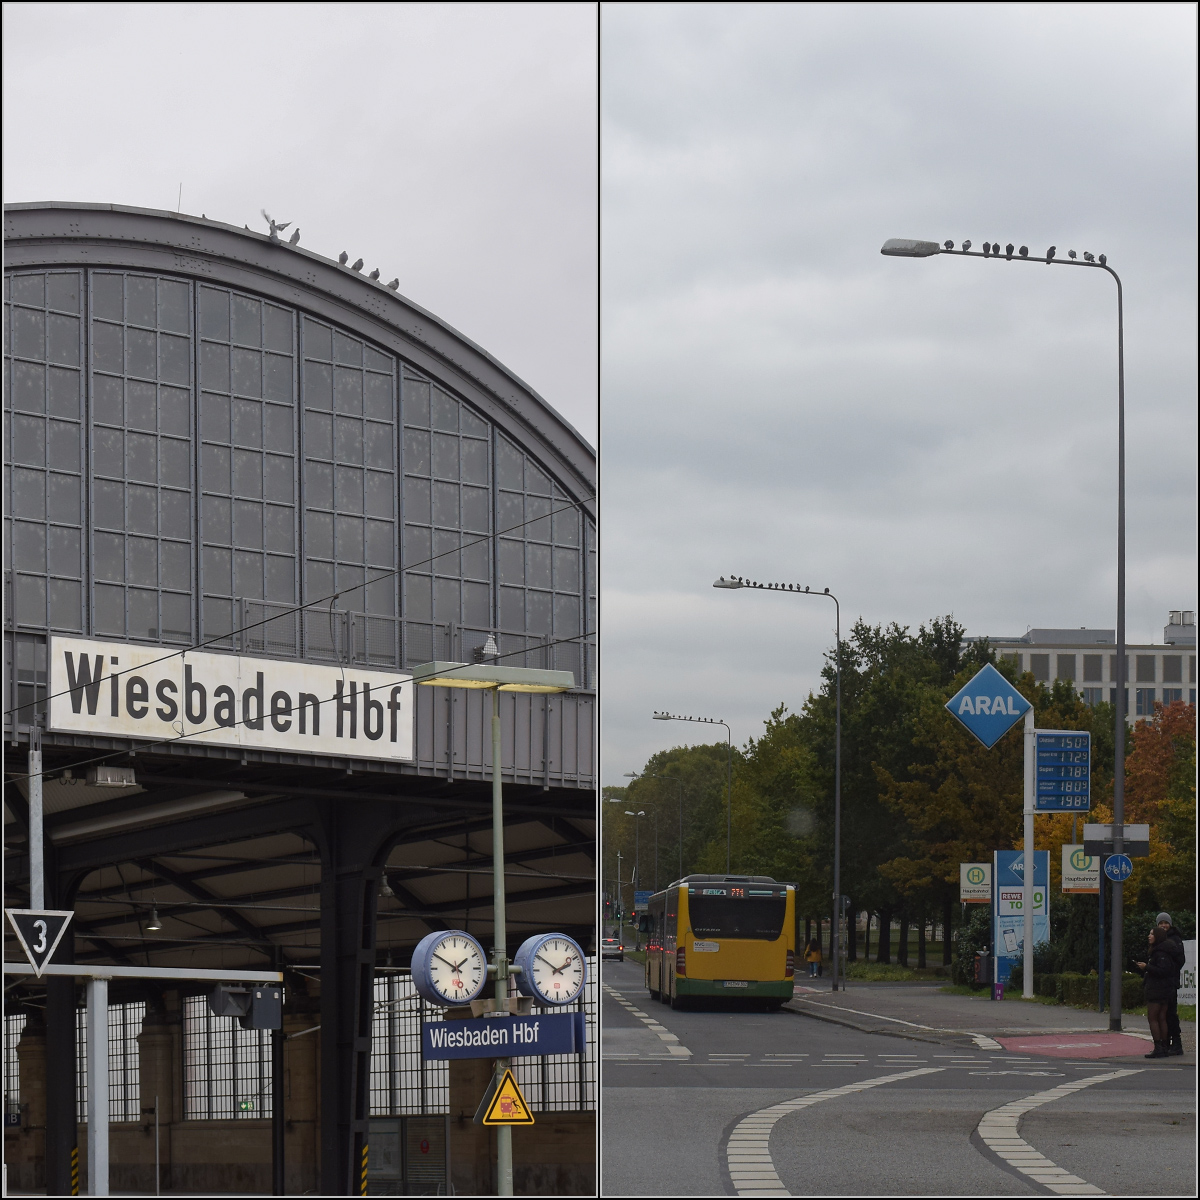 Was marode Infrastruktur auslösen kann. 

Selbst das Federvieh ist betroffen. Nunmehr arbeitslose Tauben lungern auf den Straßen-Laternen vor dem Geisterbahnhof Wiesbaden rum. Oktober 2021.